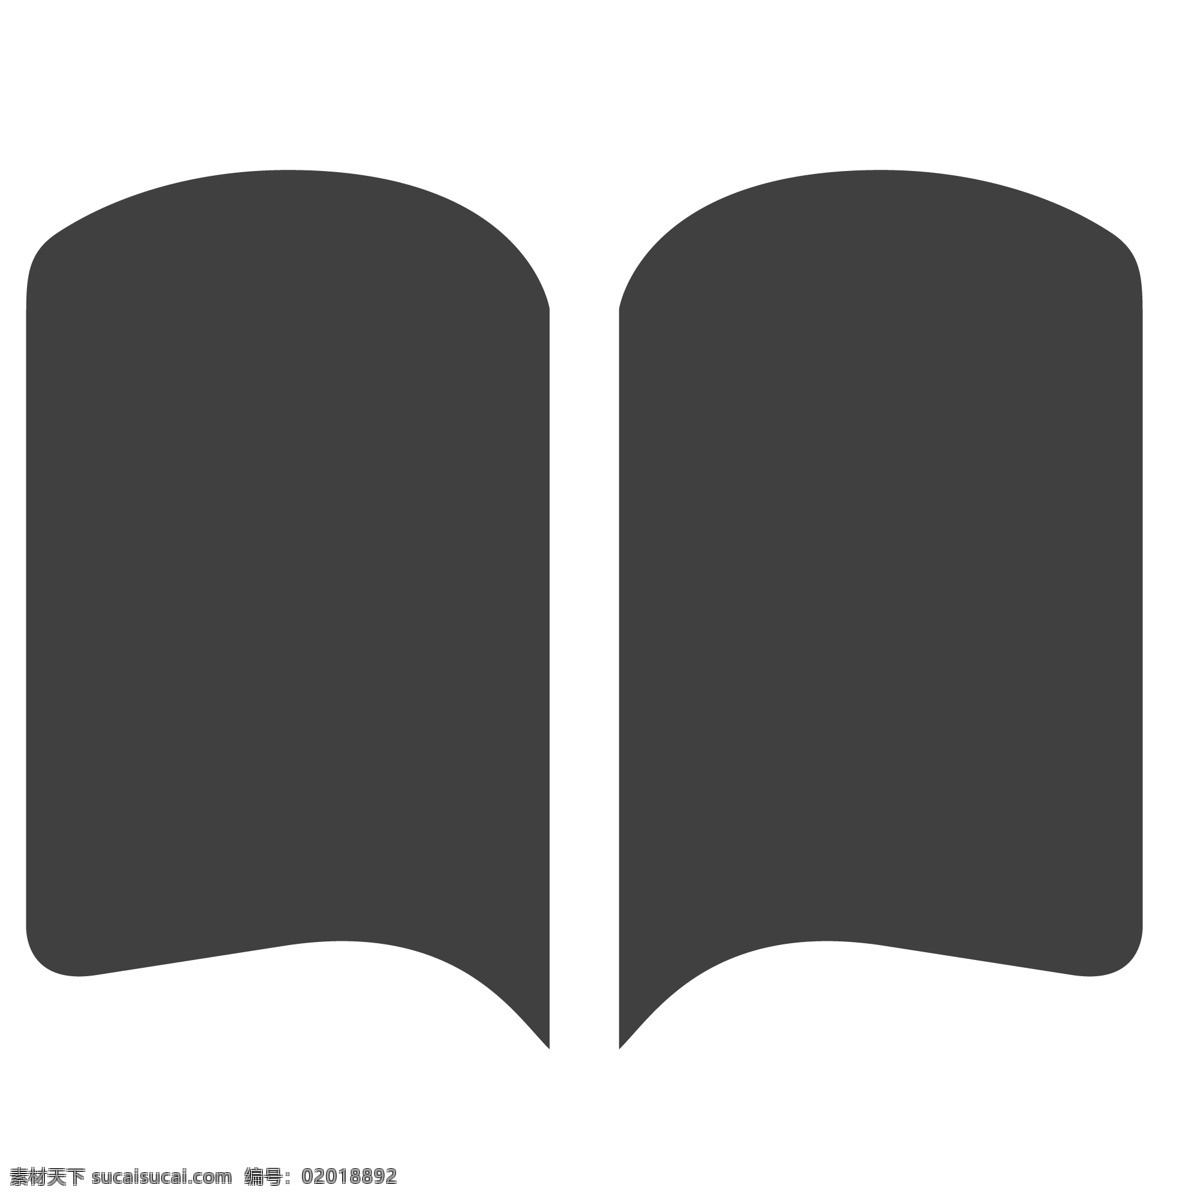 翻开 的卡 通 书本 本子 图书 生活图标 卡通图标 黑色的图标 手机图标 智能图标设计